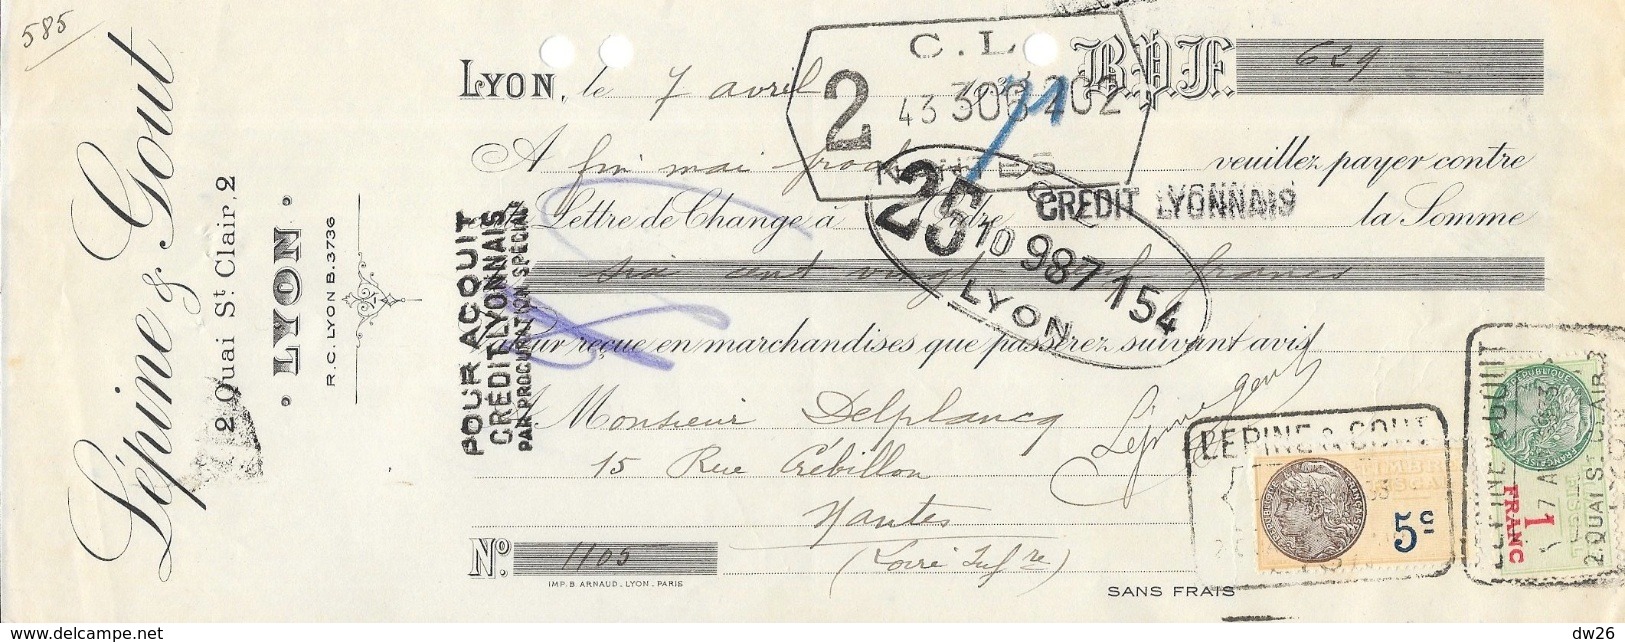 Lettre De Change 1933 - Lépine & Gout, Lyon (Quai St Clair) - Bills Of Exchange